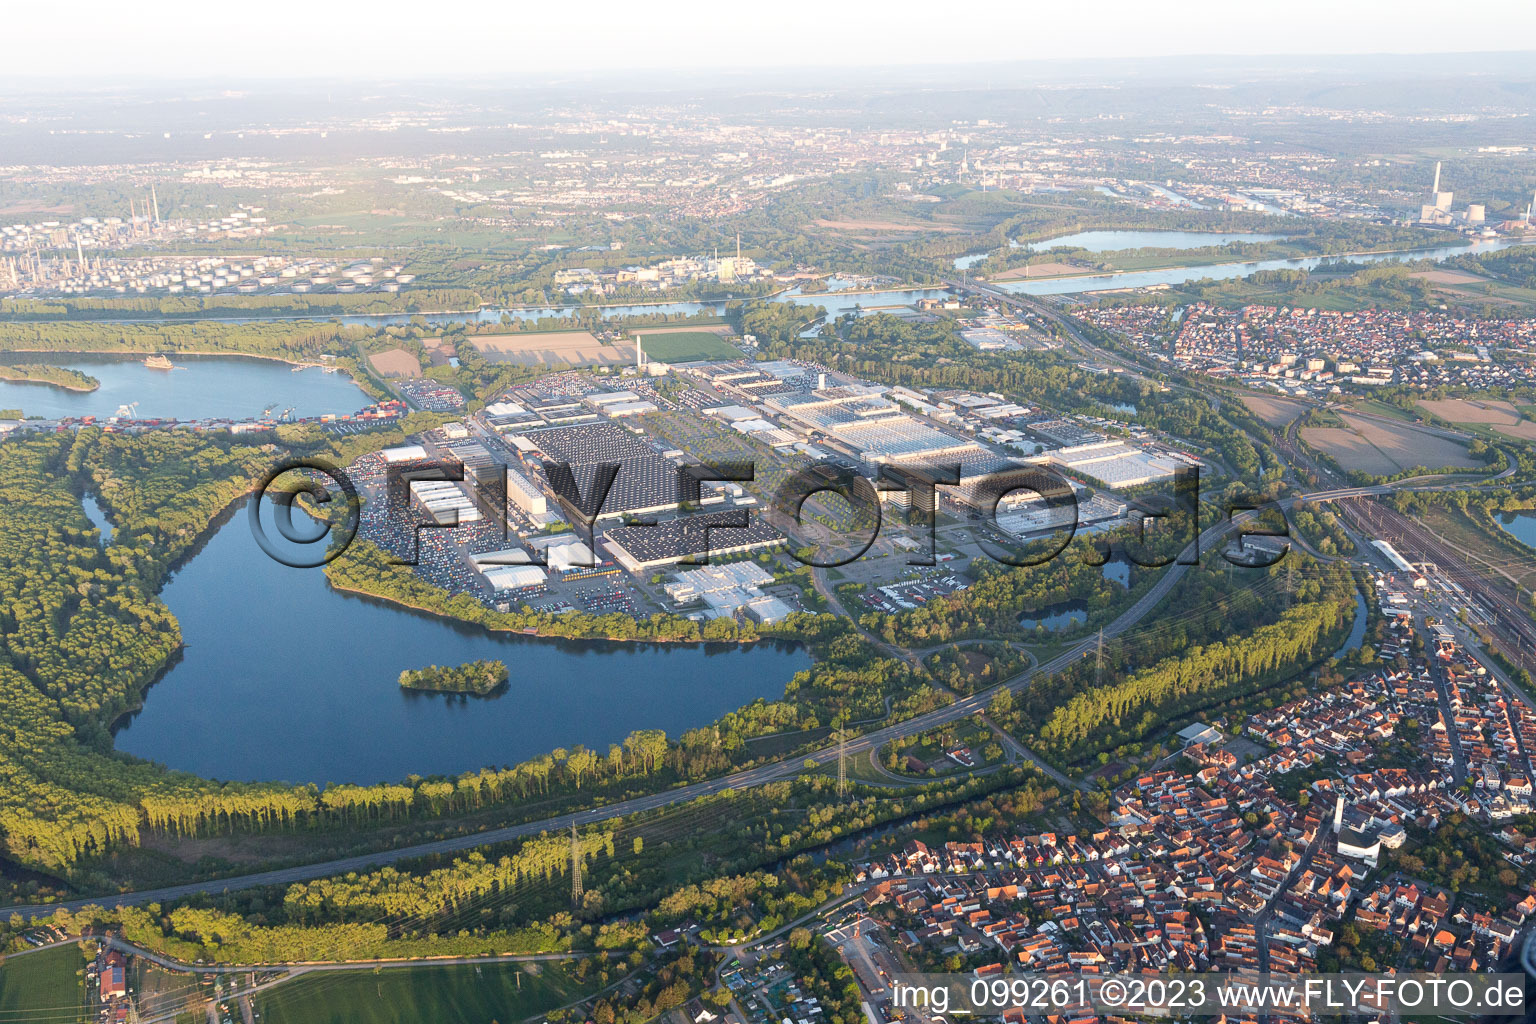 Luftbild von Wörth am Rhein im Bundesland Rheinland-Pfalz, Deutschland